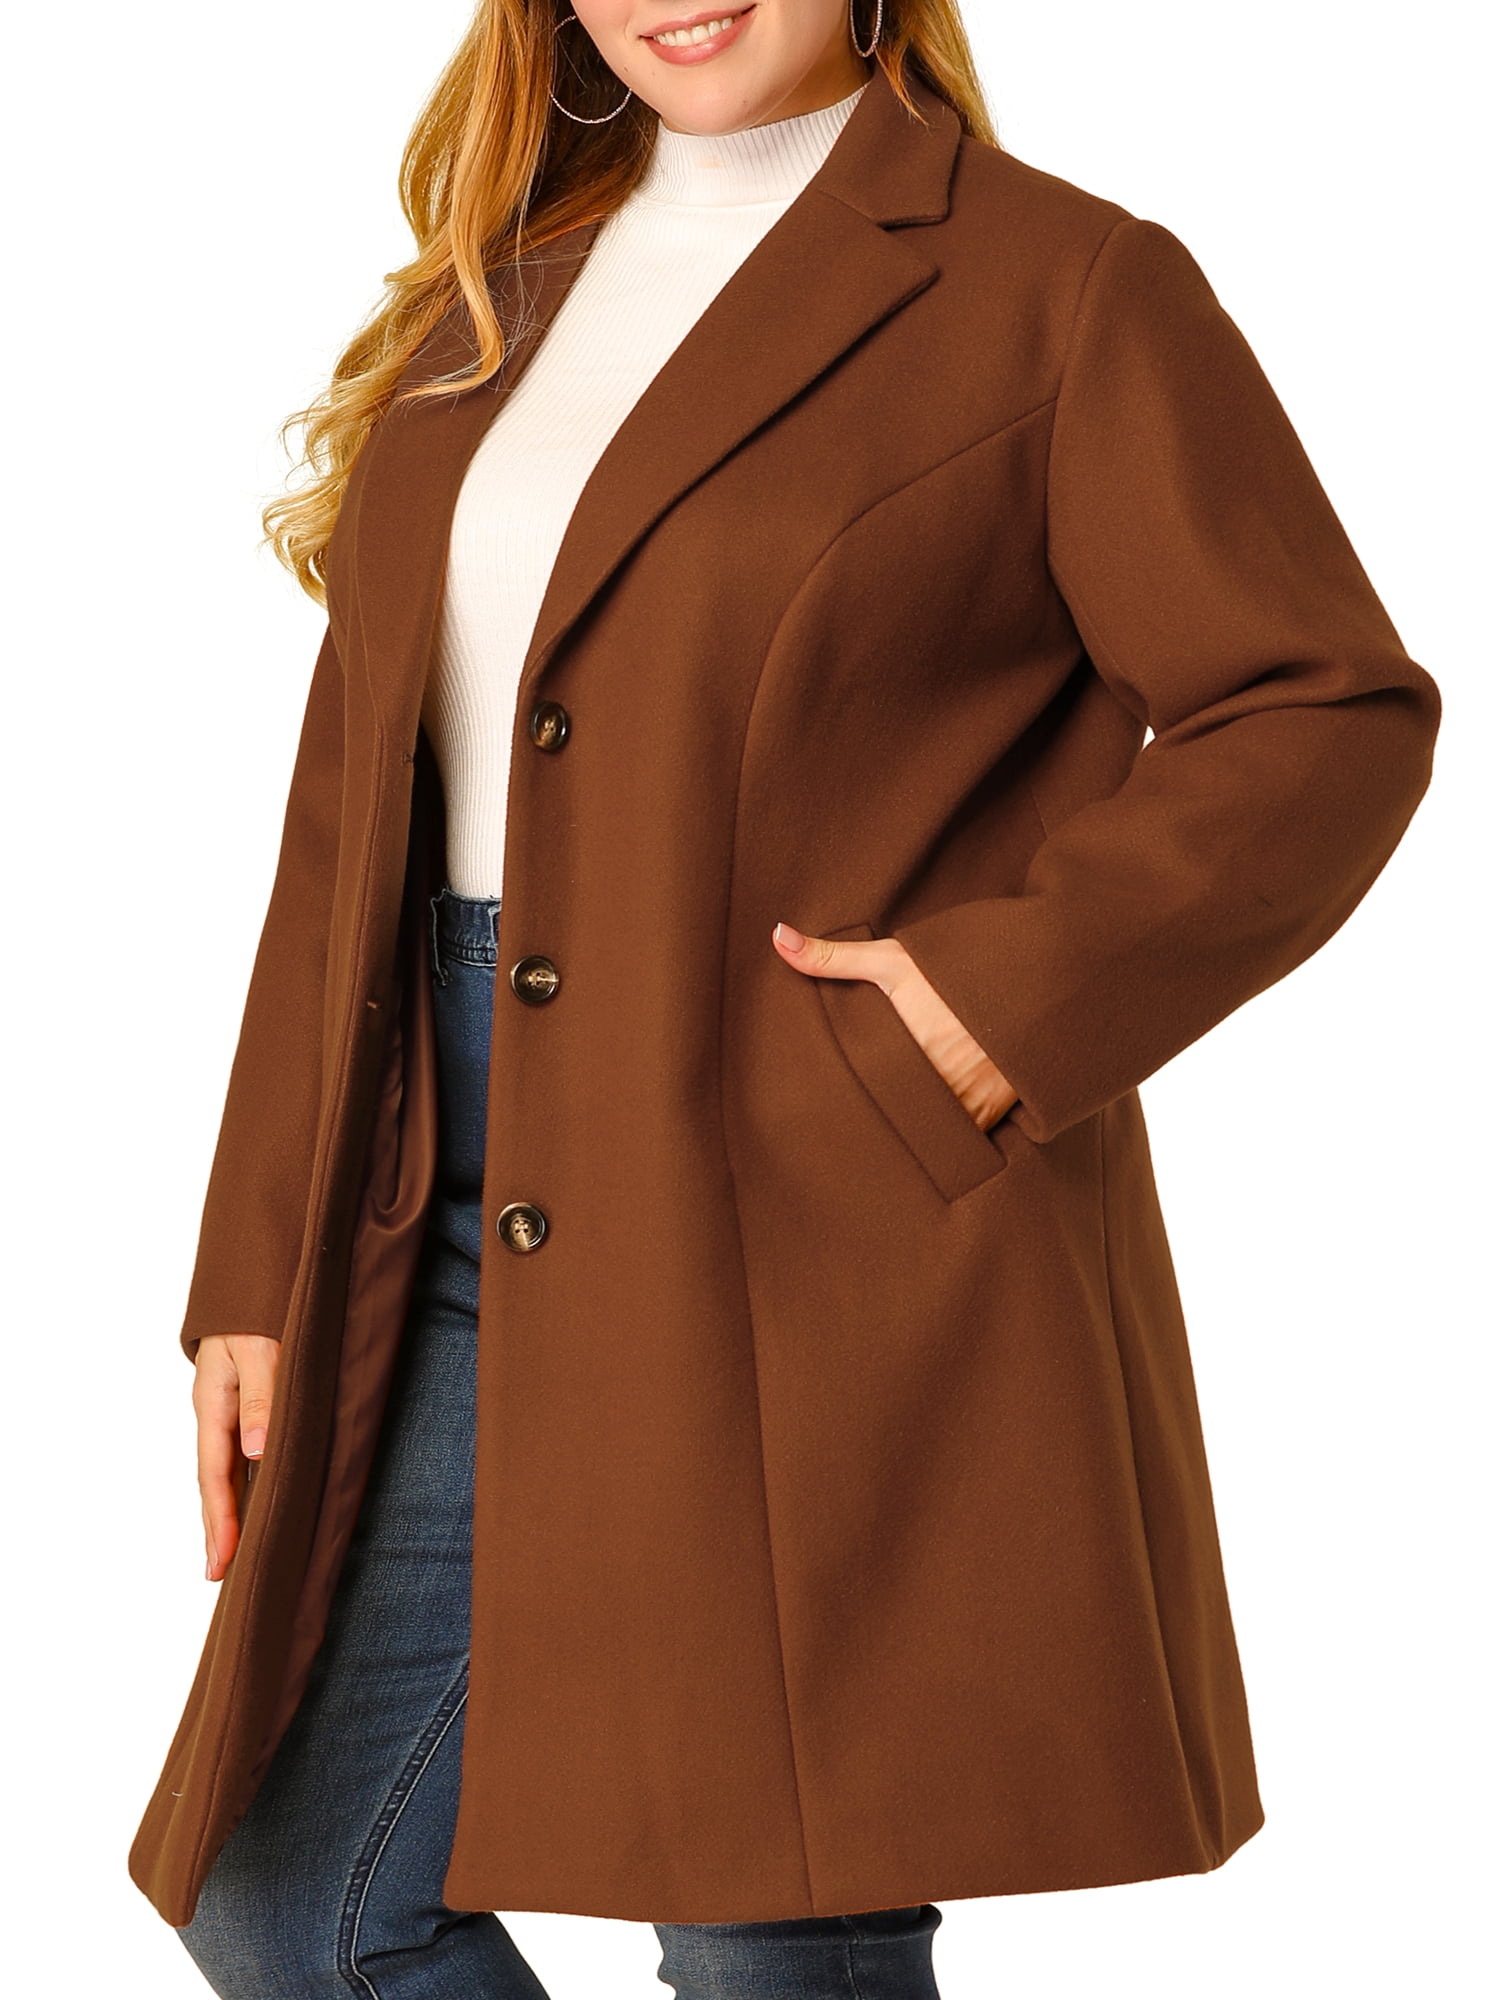 Unique Bargains - Women's Plus Size Coats Elegant Notched Lapel Single ...